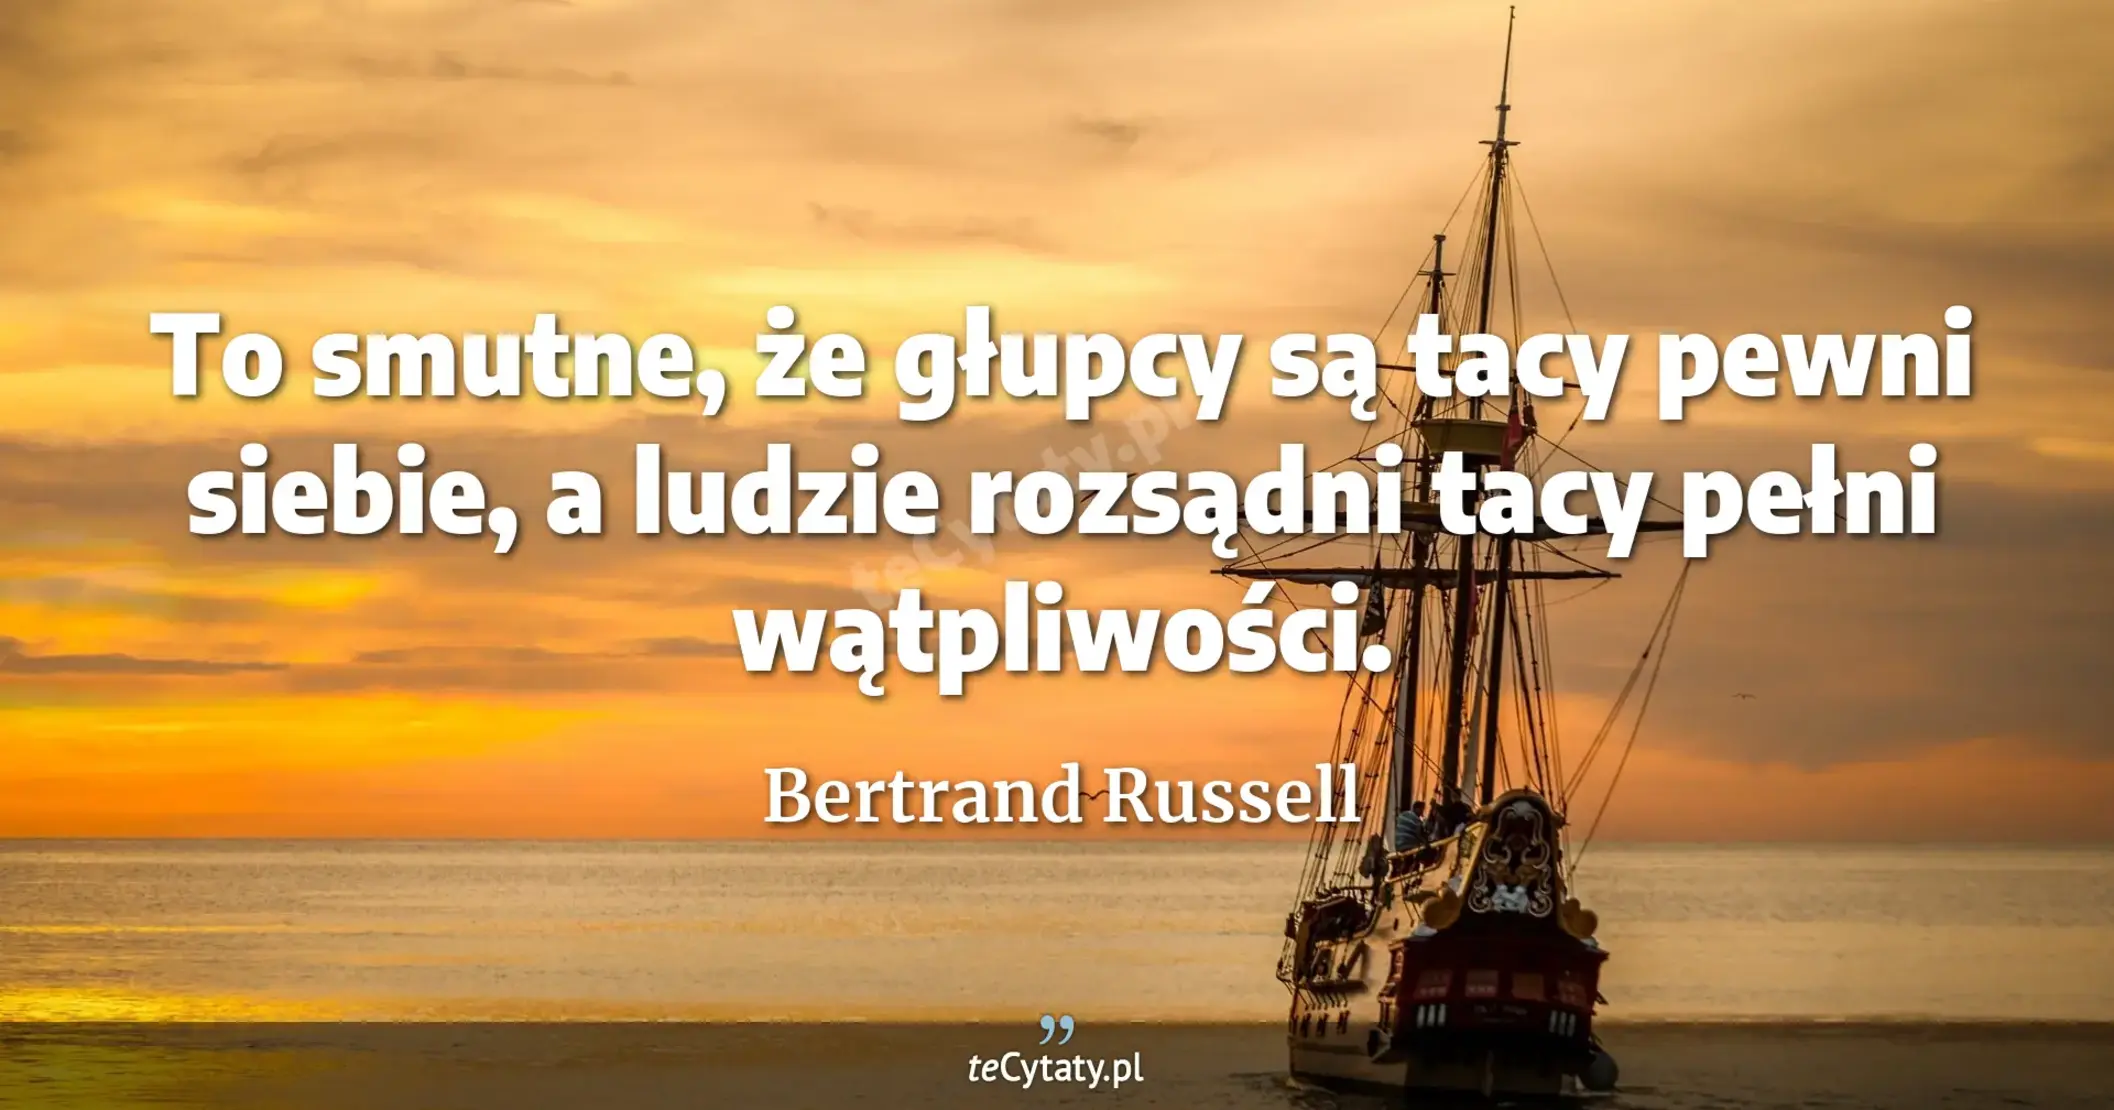 To smutne, że głupcy są tacy pewni siebie, a ludzie rozsądni tacy pełni wątpliwości. - Bertrand Russell